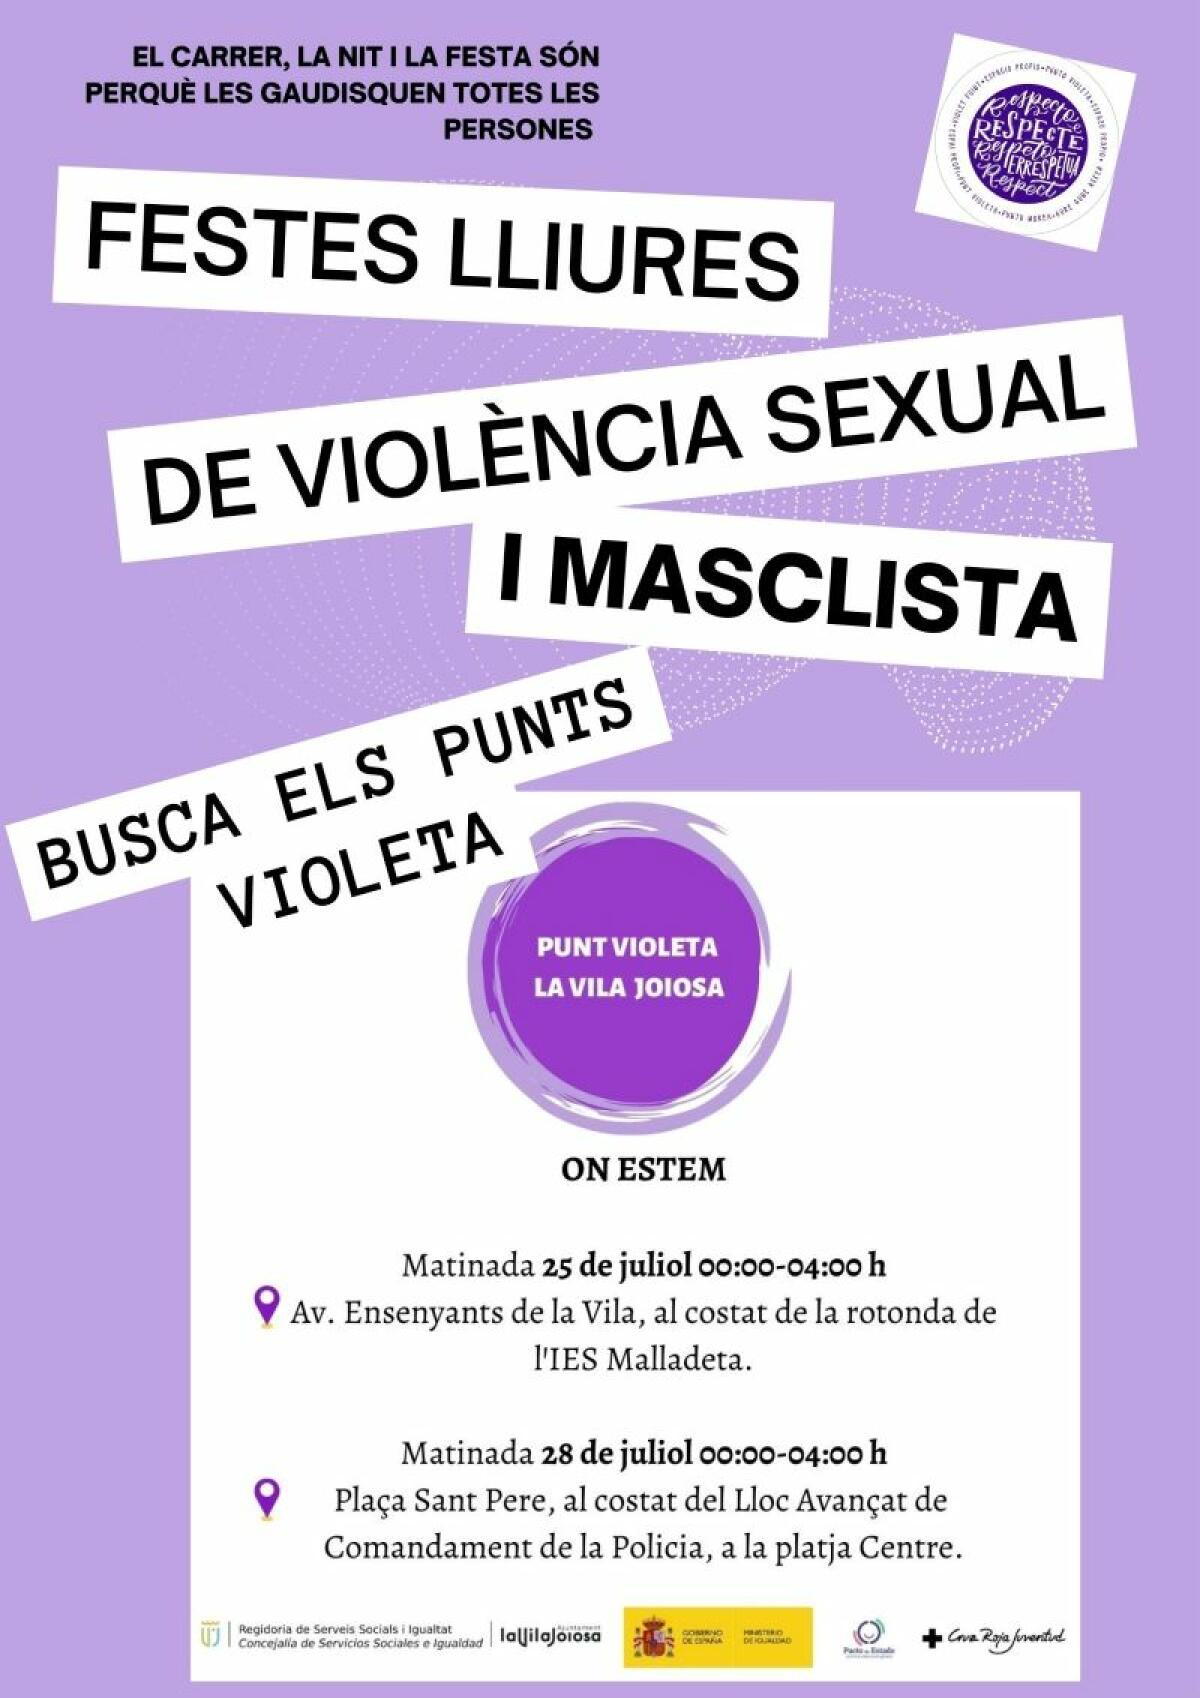 5000 tapavasos se repartirán en las fiestas de Moros y Cristianos de Villajoyosa para prevenir agresiones sexuales por sumisión química